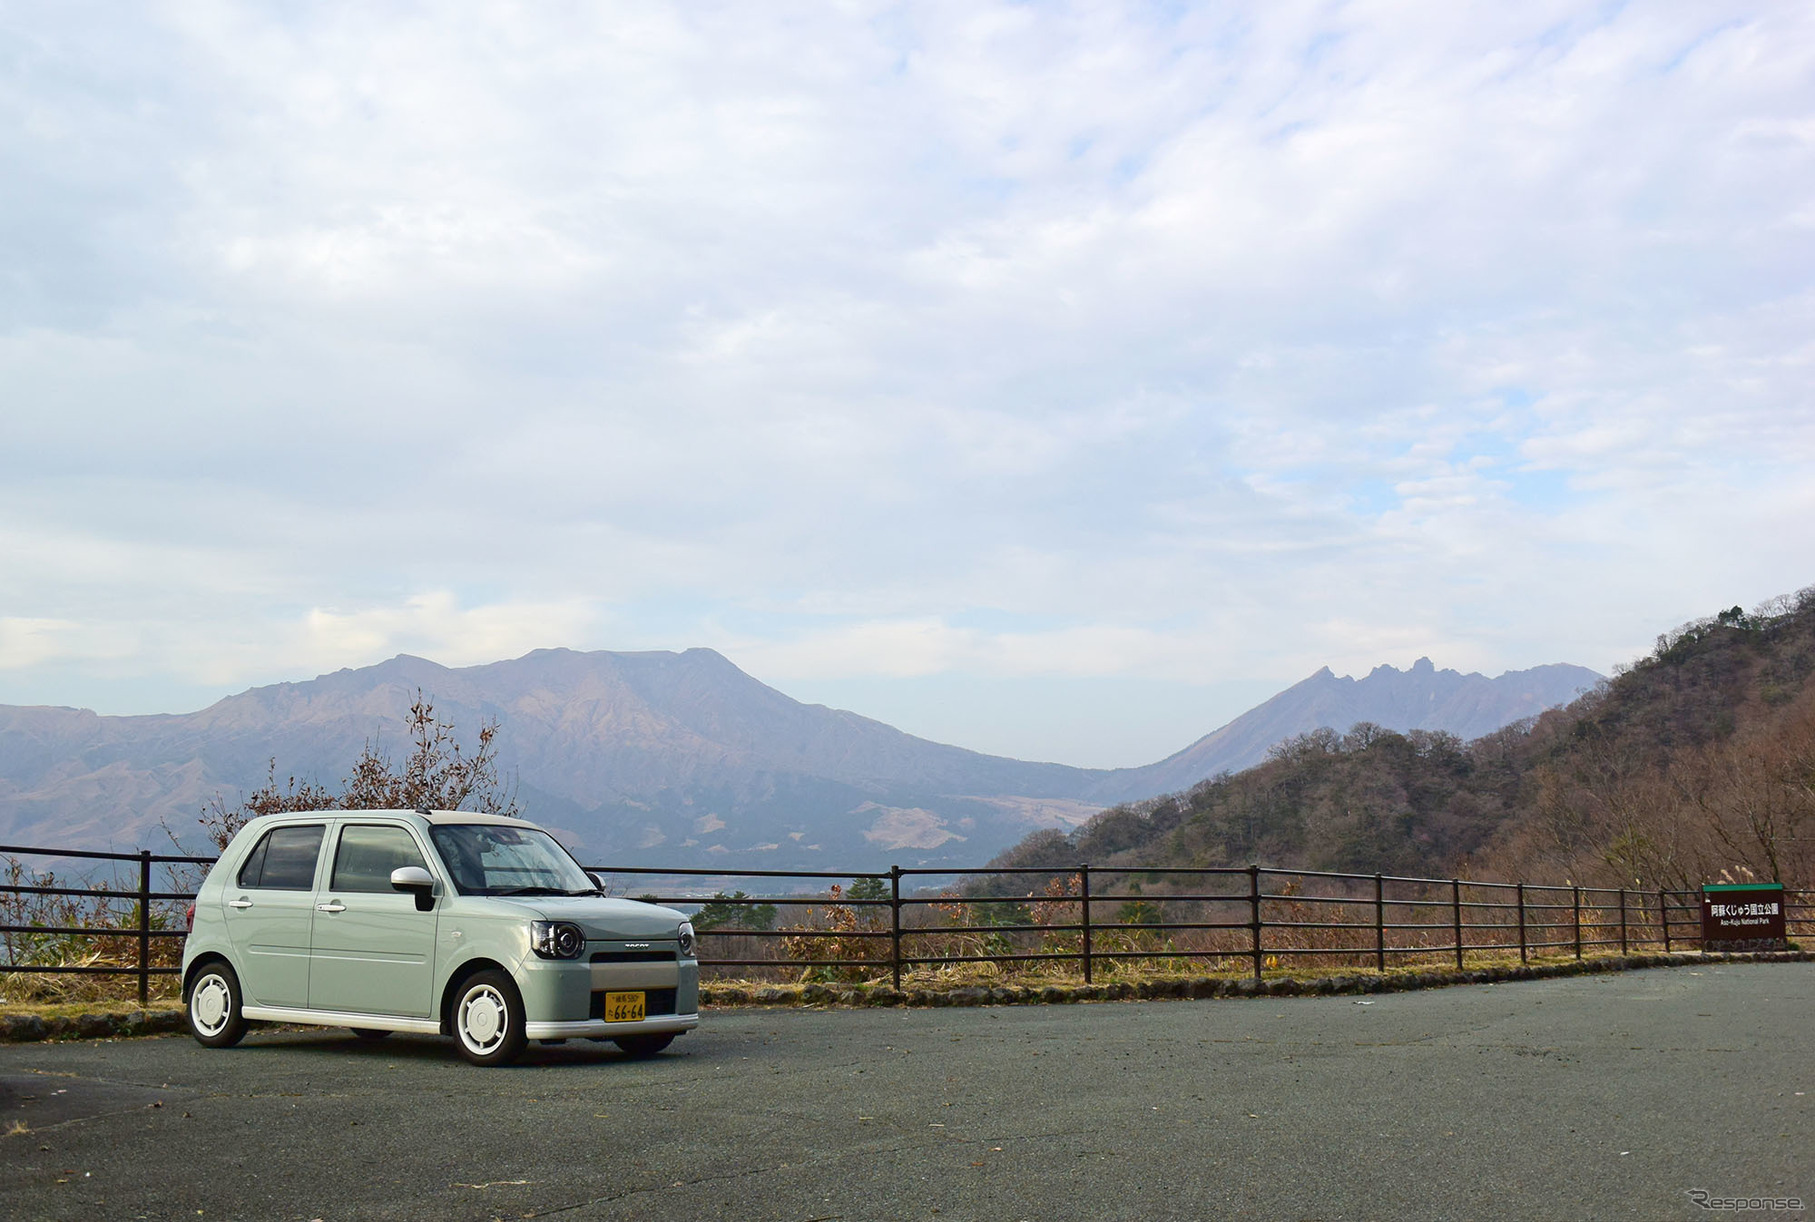 阿蘇山をバックに記念写真を撮った。